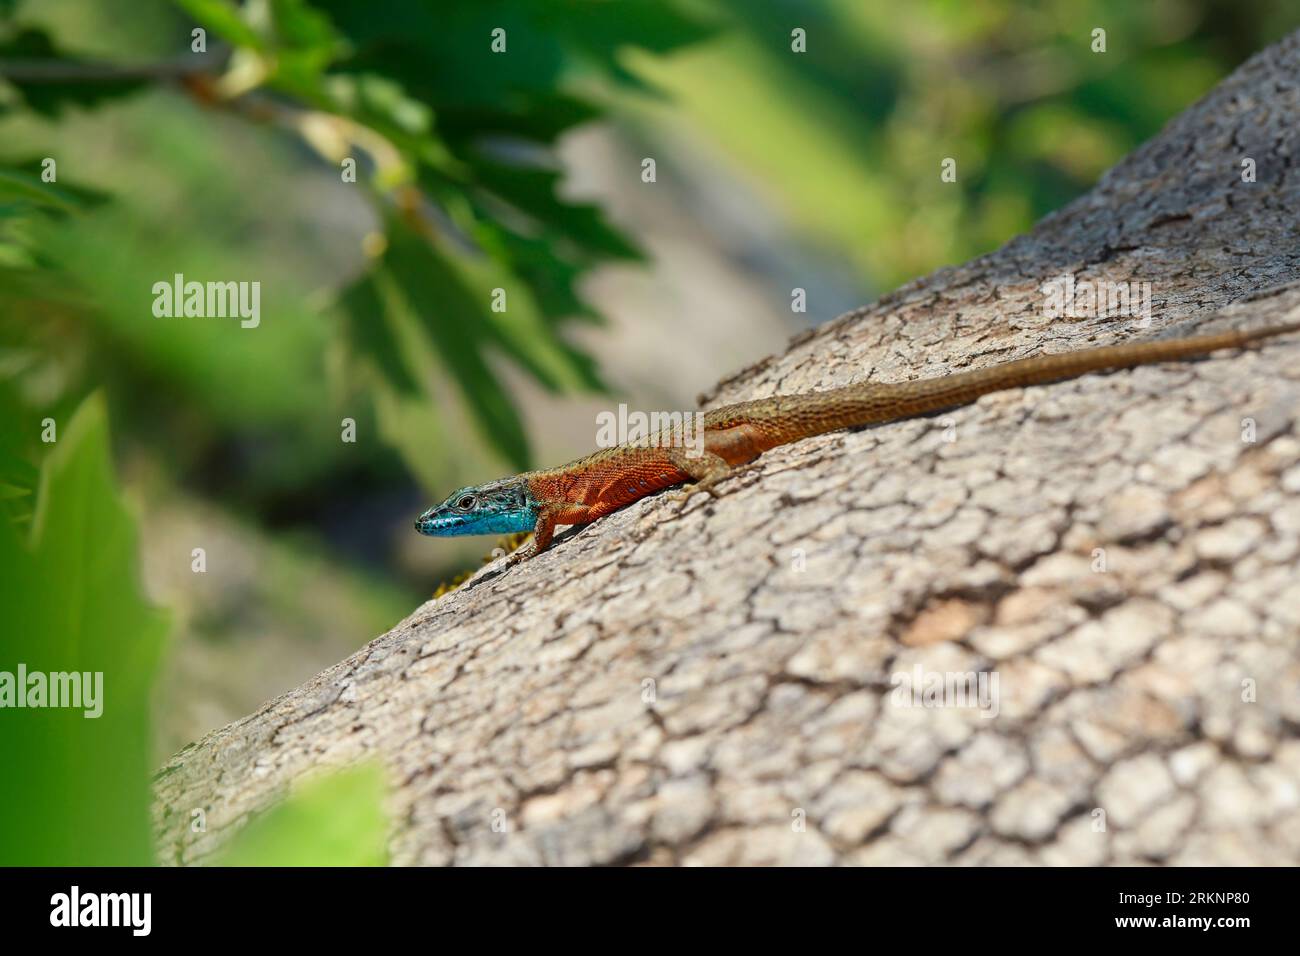 Lucertola dalla gola blu, algyroides dalmata (Algyroides nigropunctatus, Algiroides nigropunctatus), maschio in riproduzione colorazione su un albero Foto Stock